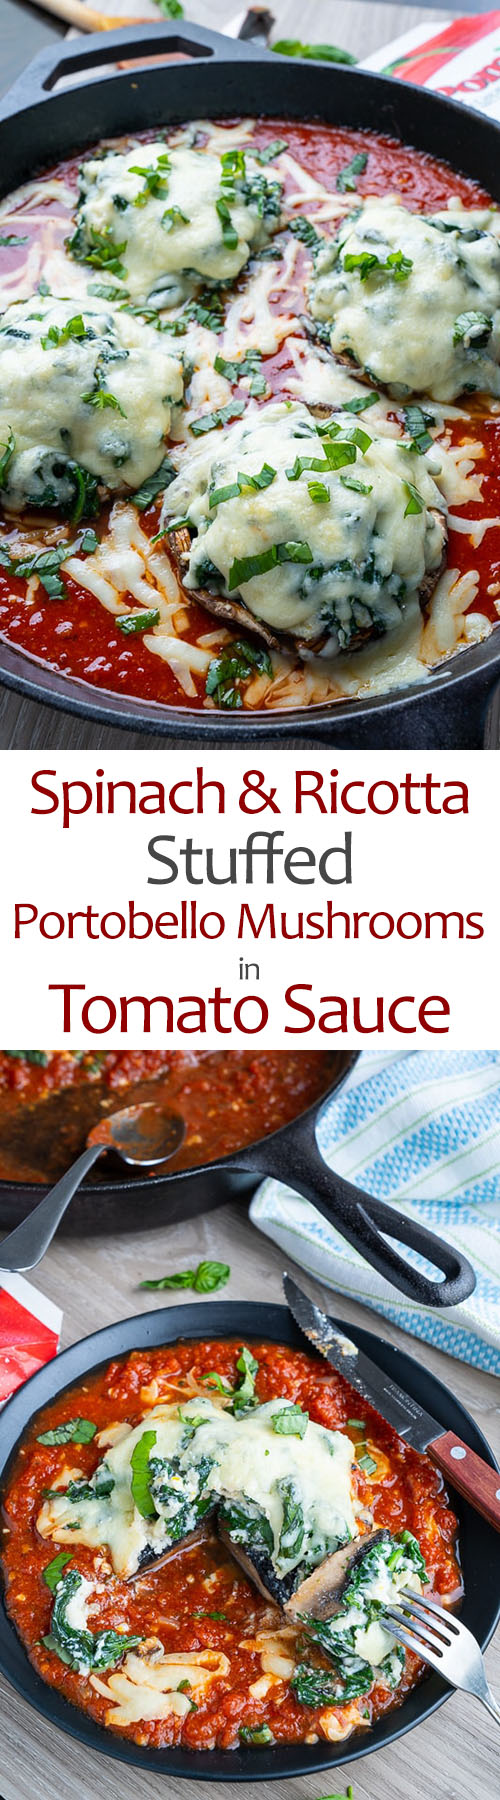 Spinach and Ricotta Stuffed Portobello Mushrooms in Tomato Sauce